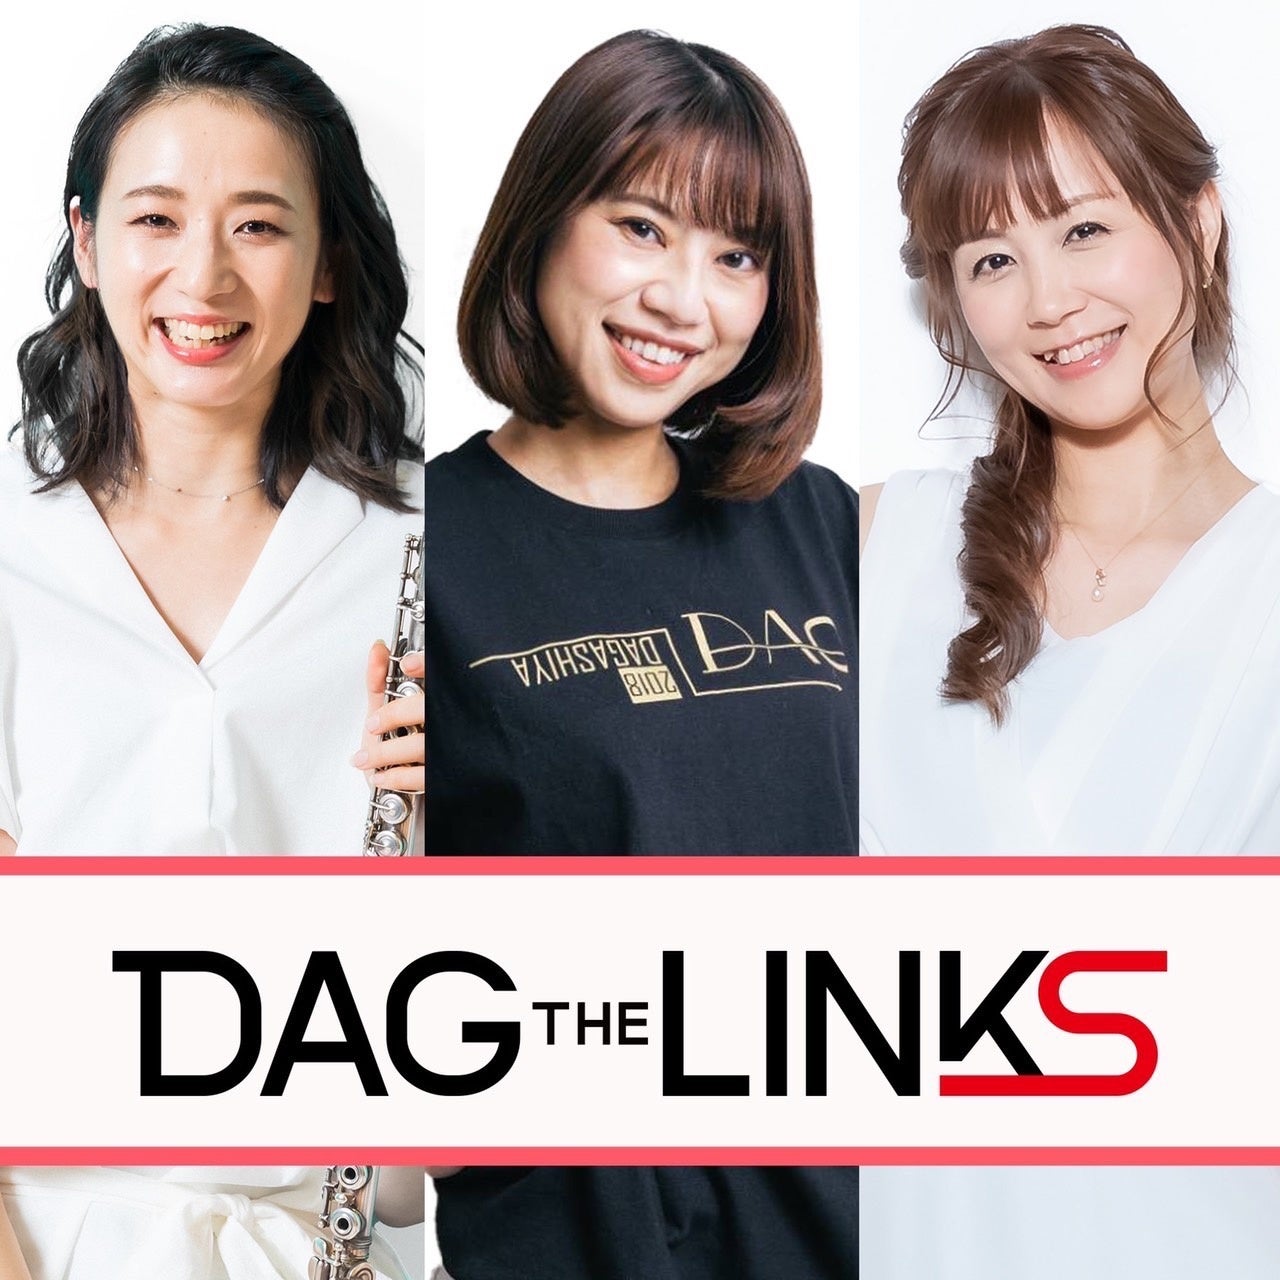 渋谷クロスFM「DAG the LINKS」(6月19日放送 ) ゲストに こりんが出演いたします。